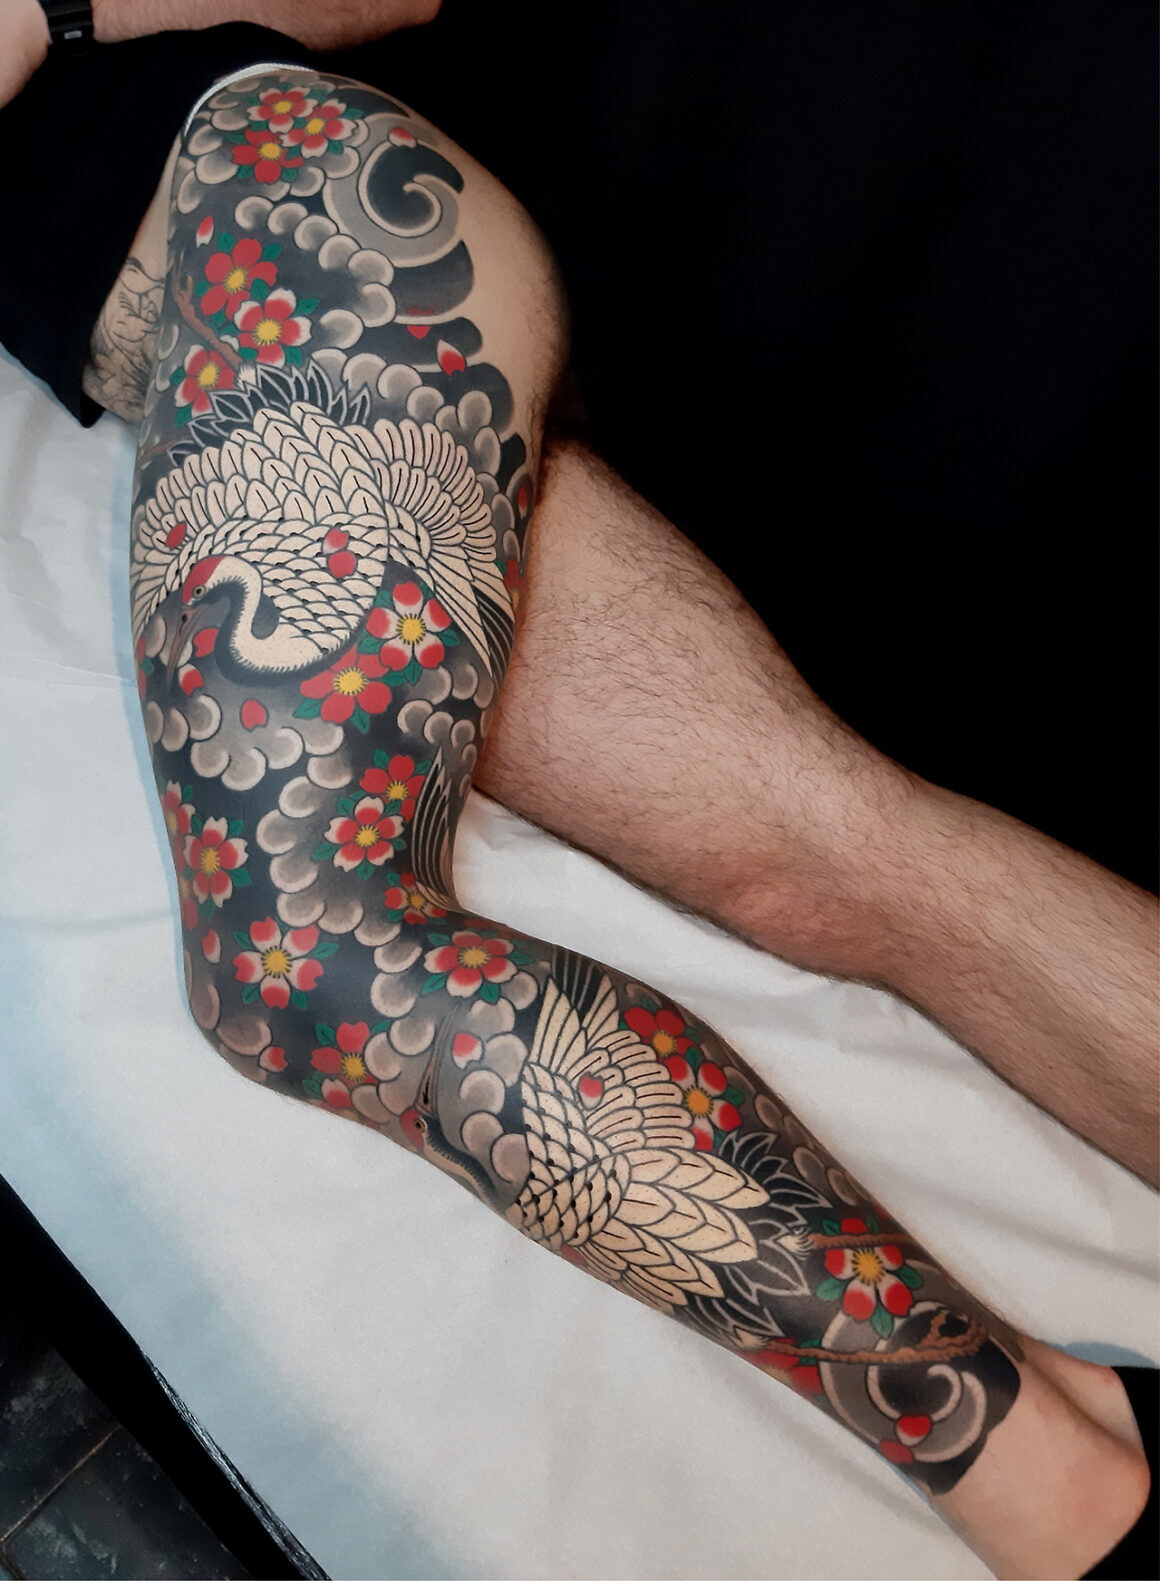 Tattoo by Yom Tattooing, tattoo artist, @_yom_